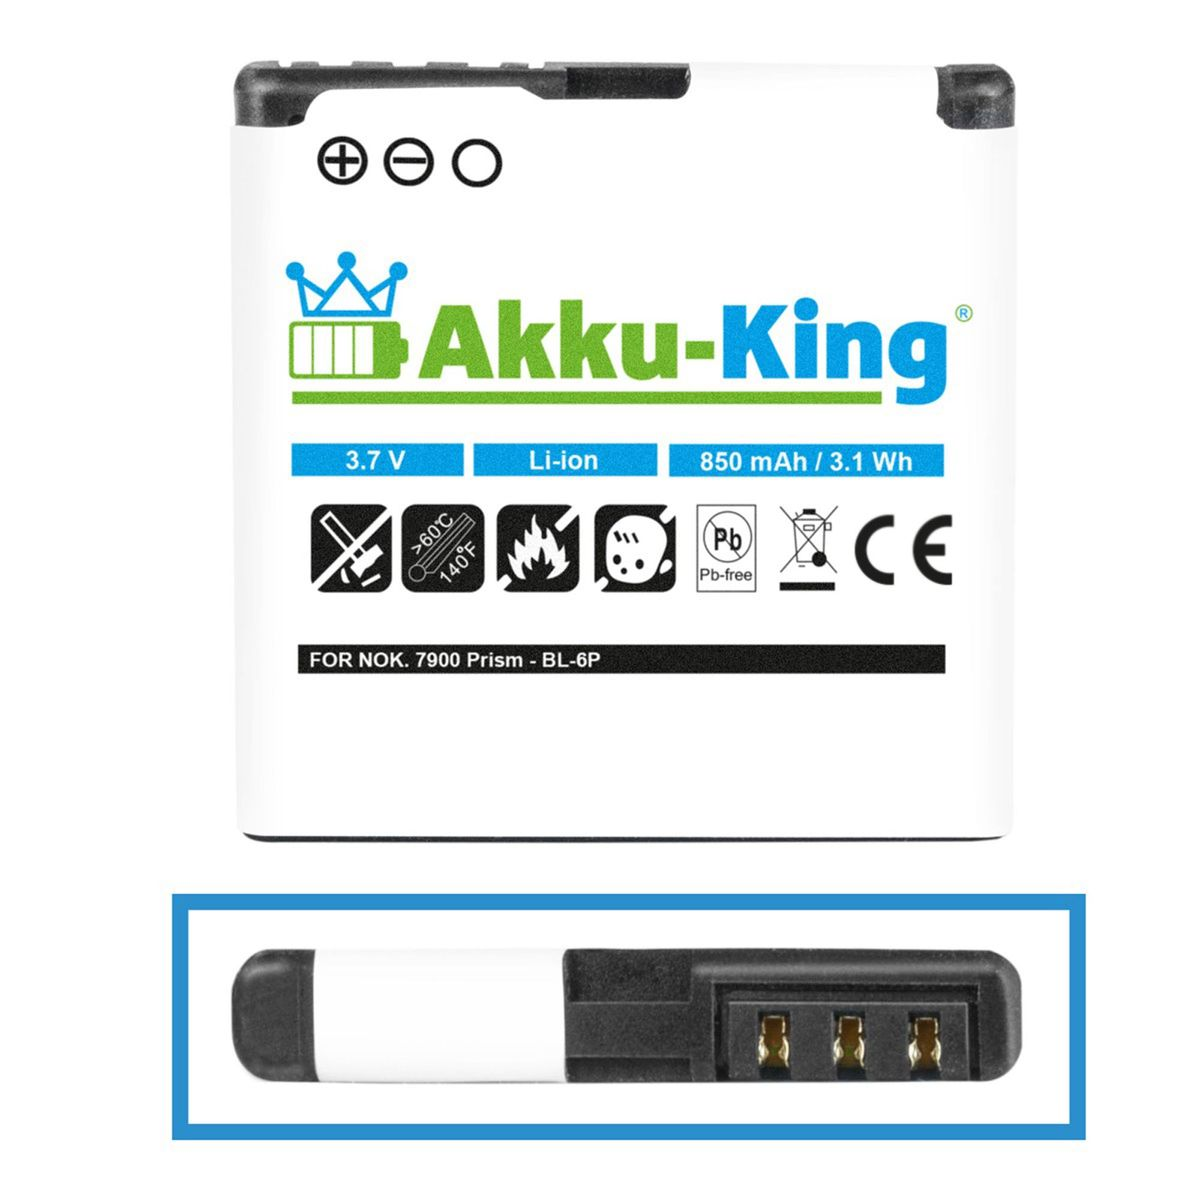 Handy-Akku, 850mAh 3.7 mit BL-6P kompatibel Li-Ion Akku AKKU-KING Nokia Volt,